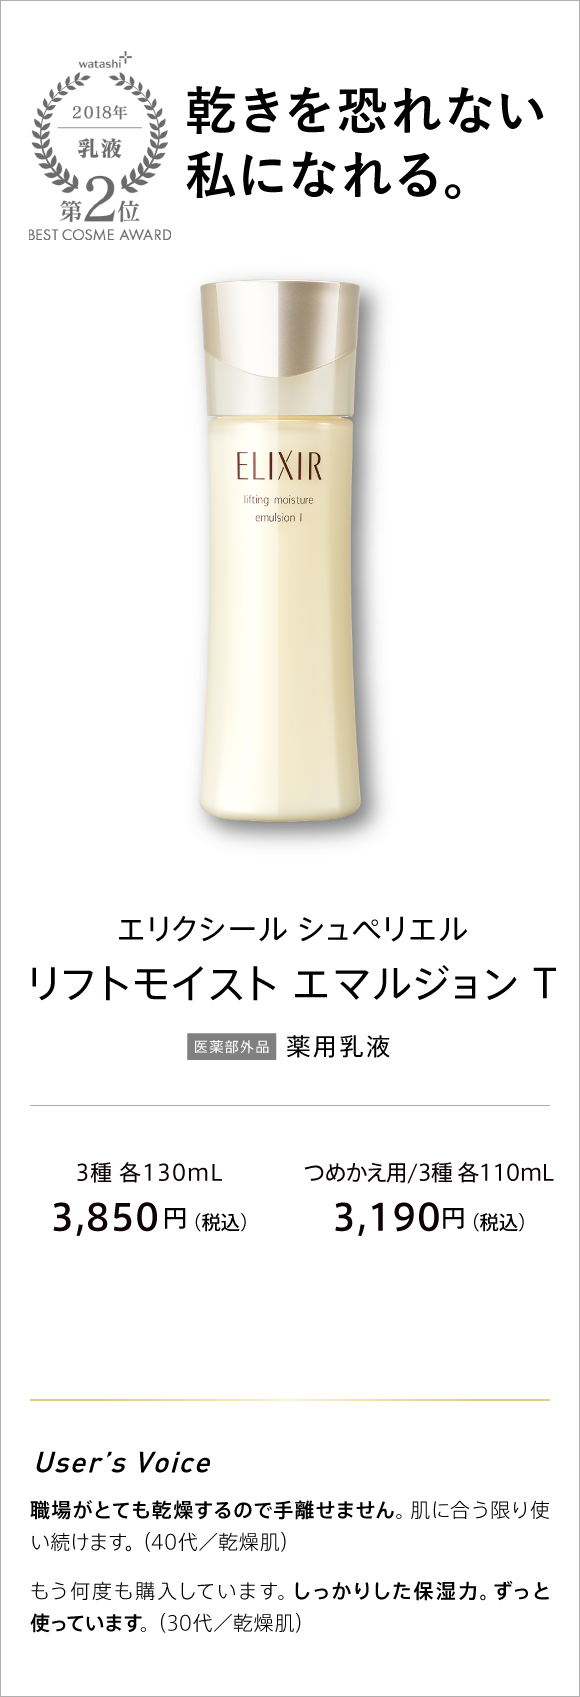 watashi+ 2018 乳液 第2位 BEST COSME AWARD  乾きを恐れない私になれる。 エリクシール シュペリエル リフトモイスト エマルジョン T 薬用乳液 3種 各130ml 3,850円(税込) つめかえ用/3種 各110ml 3,190円(税込)